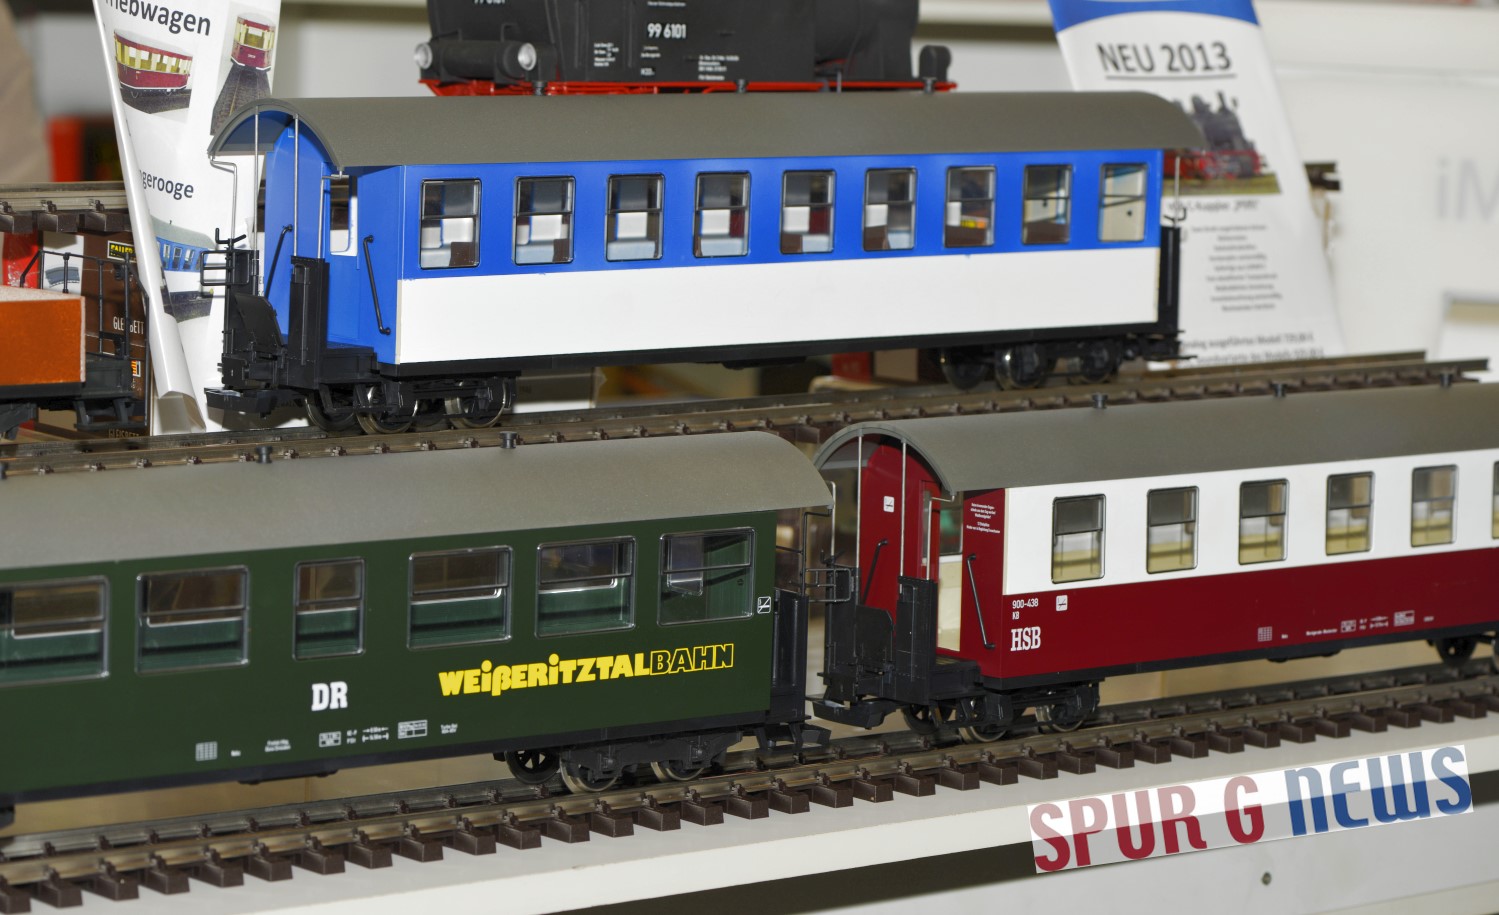 Personenwagen - Wangerooge(blau), Weißeritztalbahn(grün) und HSB(rot) von Train Line 45